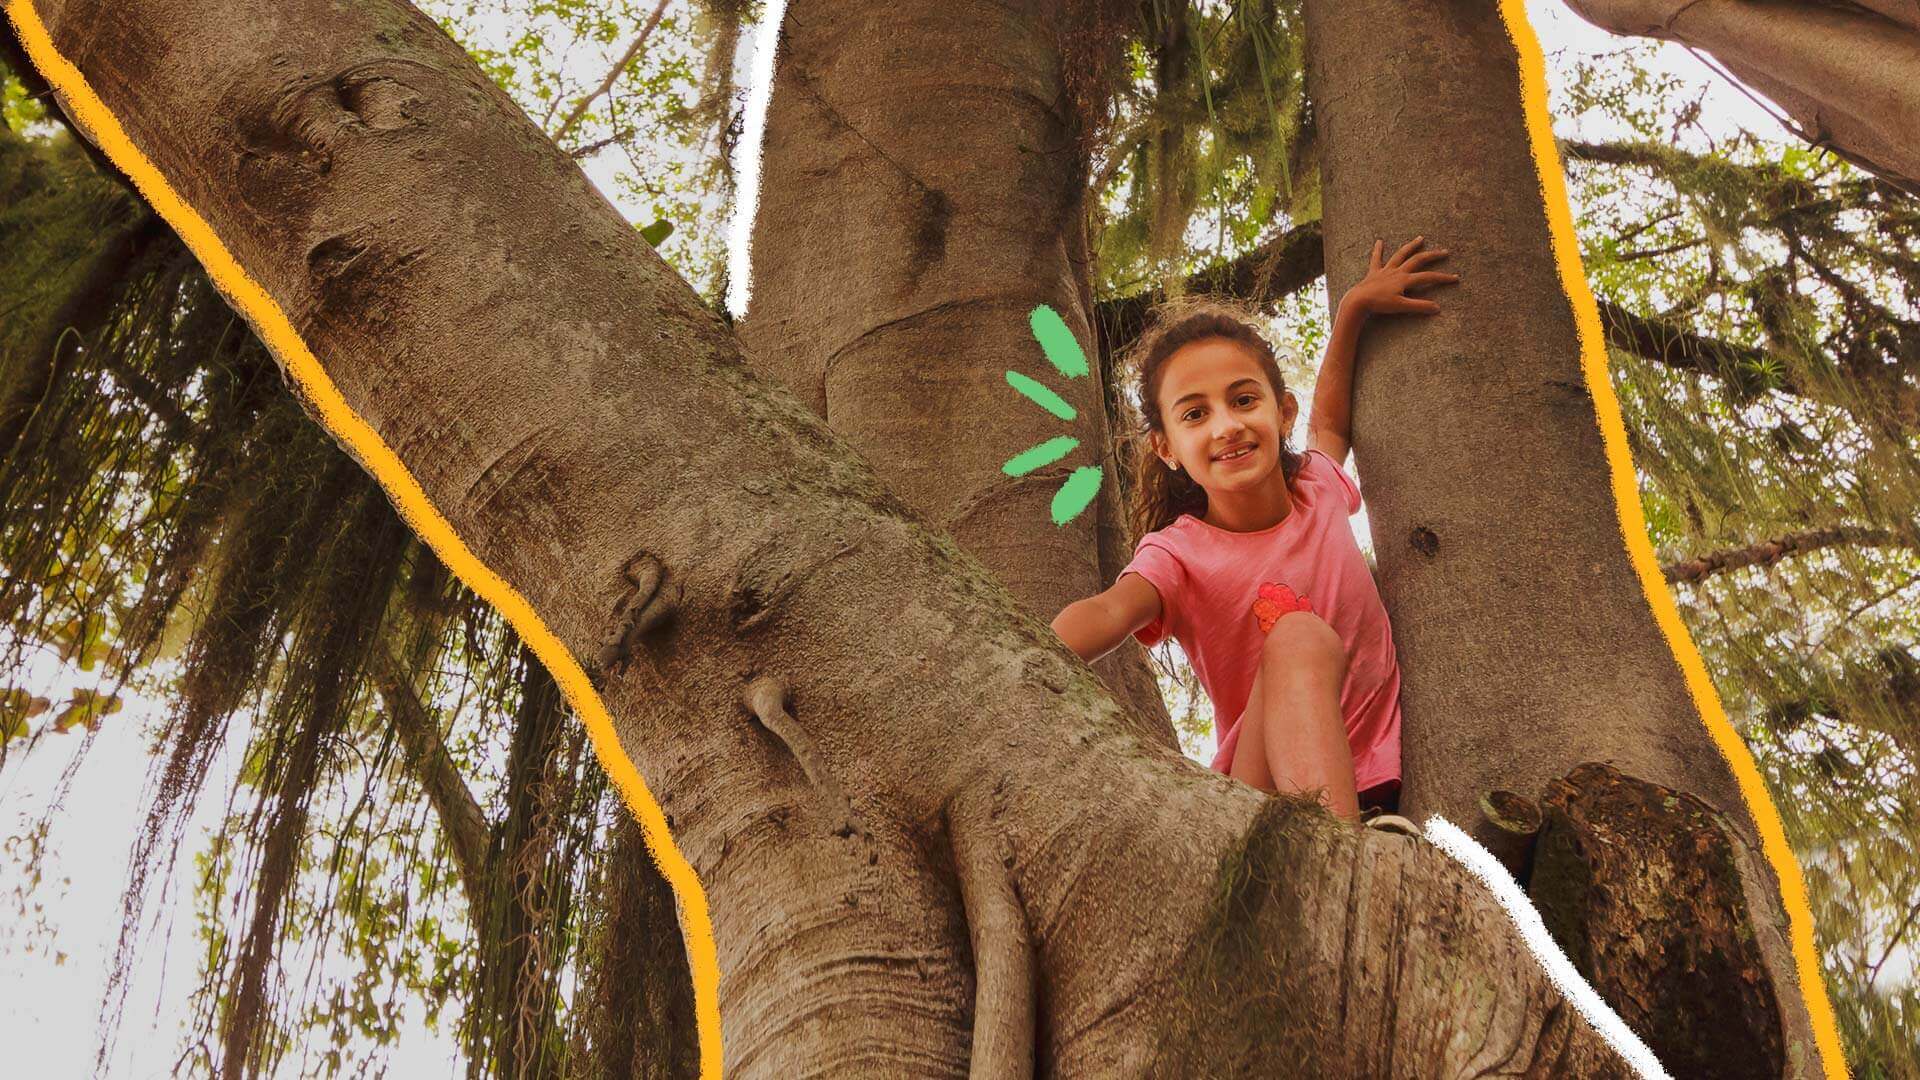 Na foto, menina de pele clara e camiseta rosa aparece sorridente entre troncos de árvores.